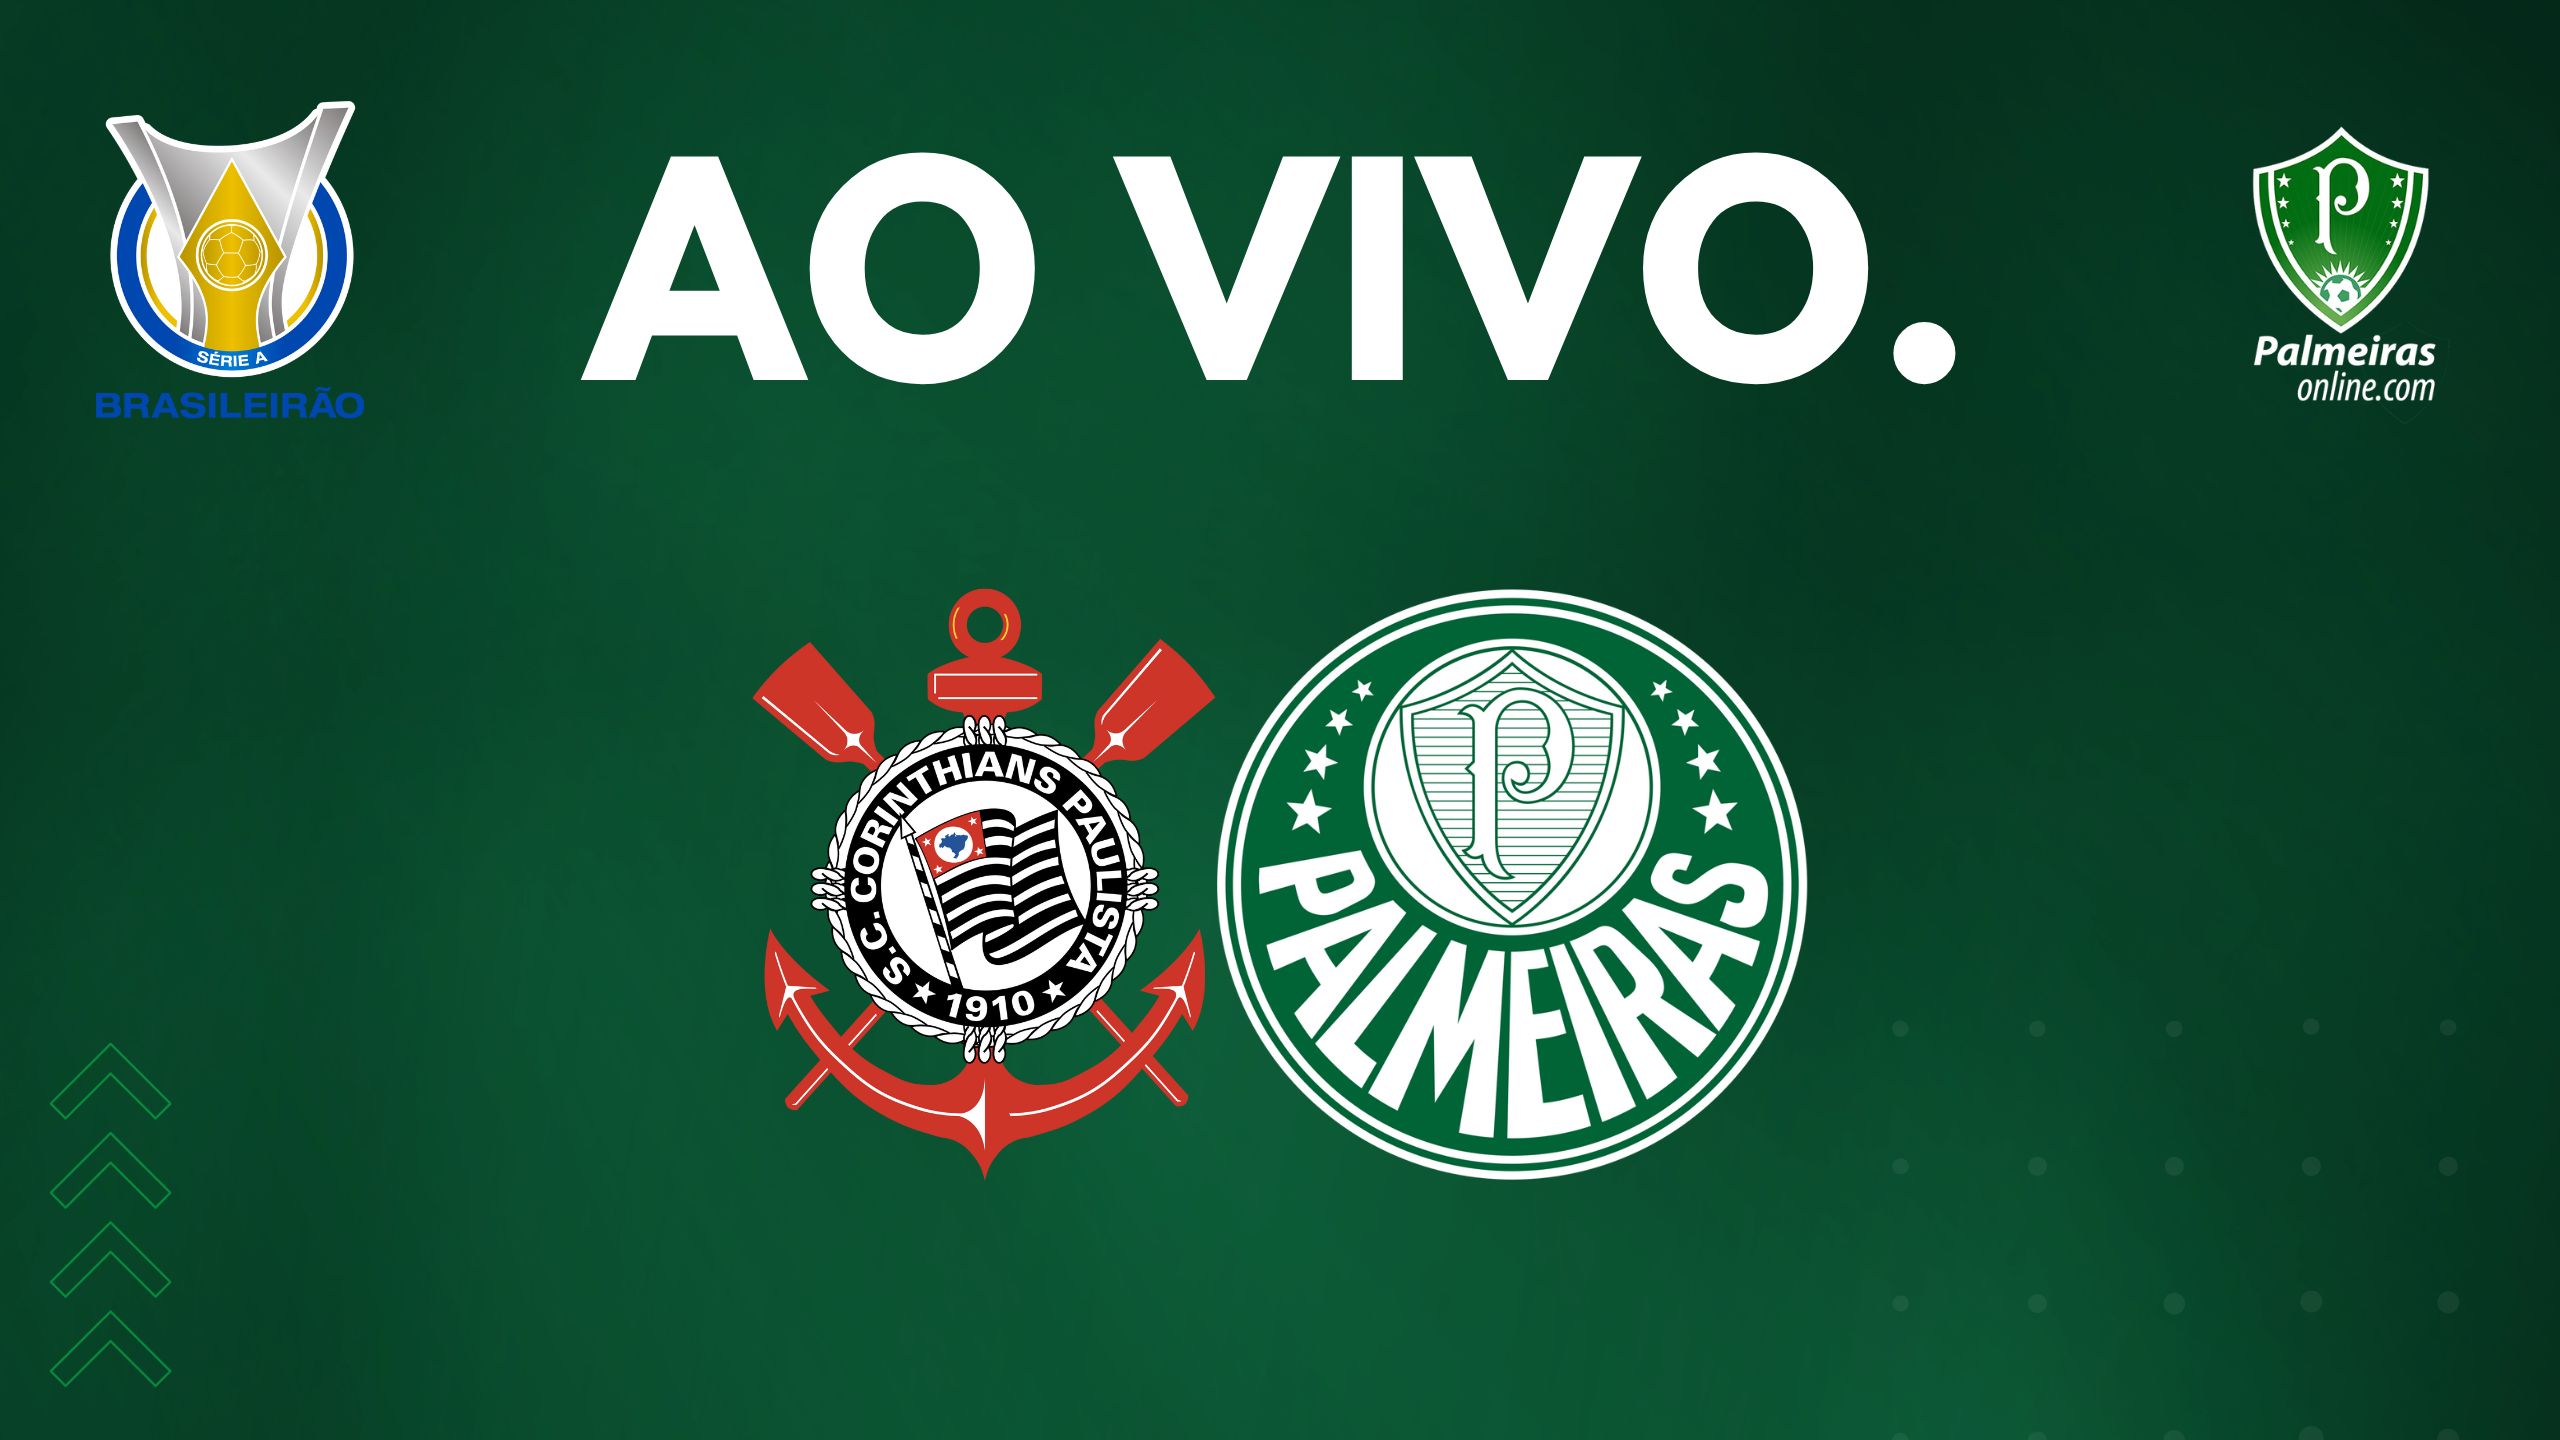 Onde assistir Palmeiras e Corinthians dia 22?